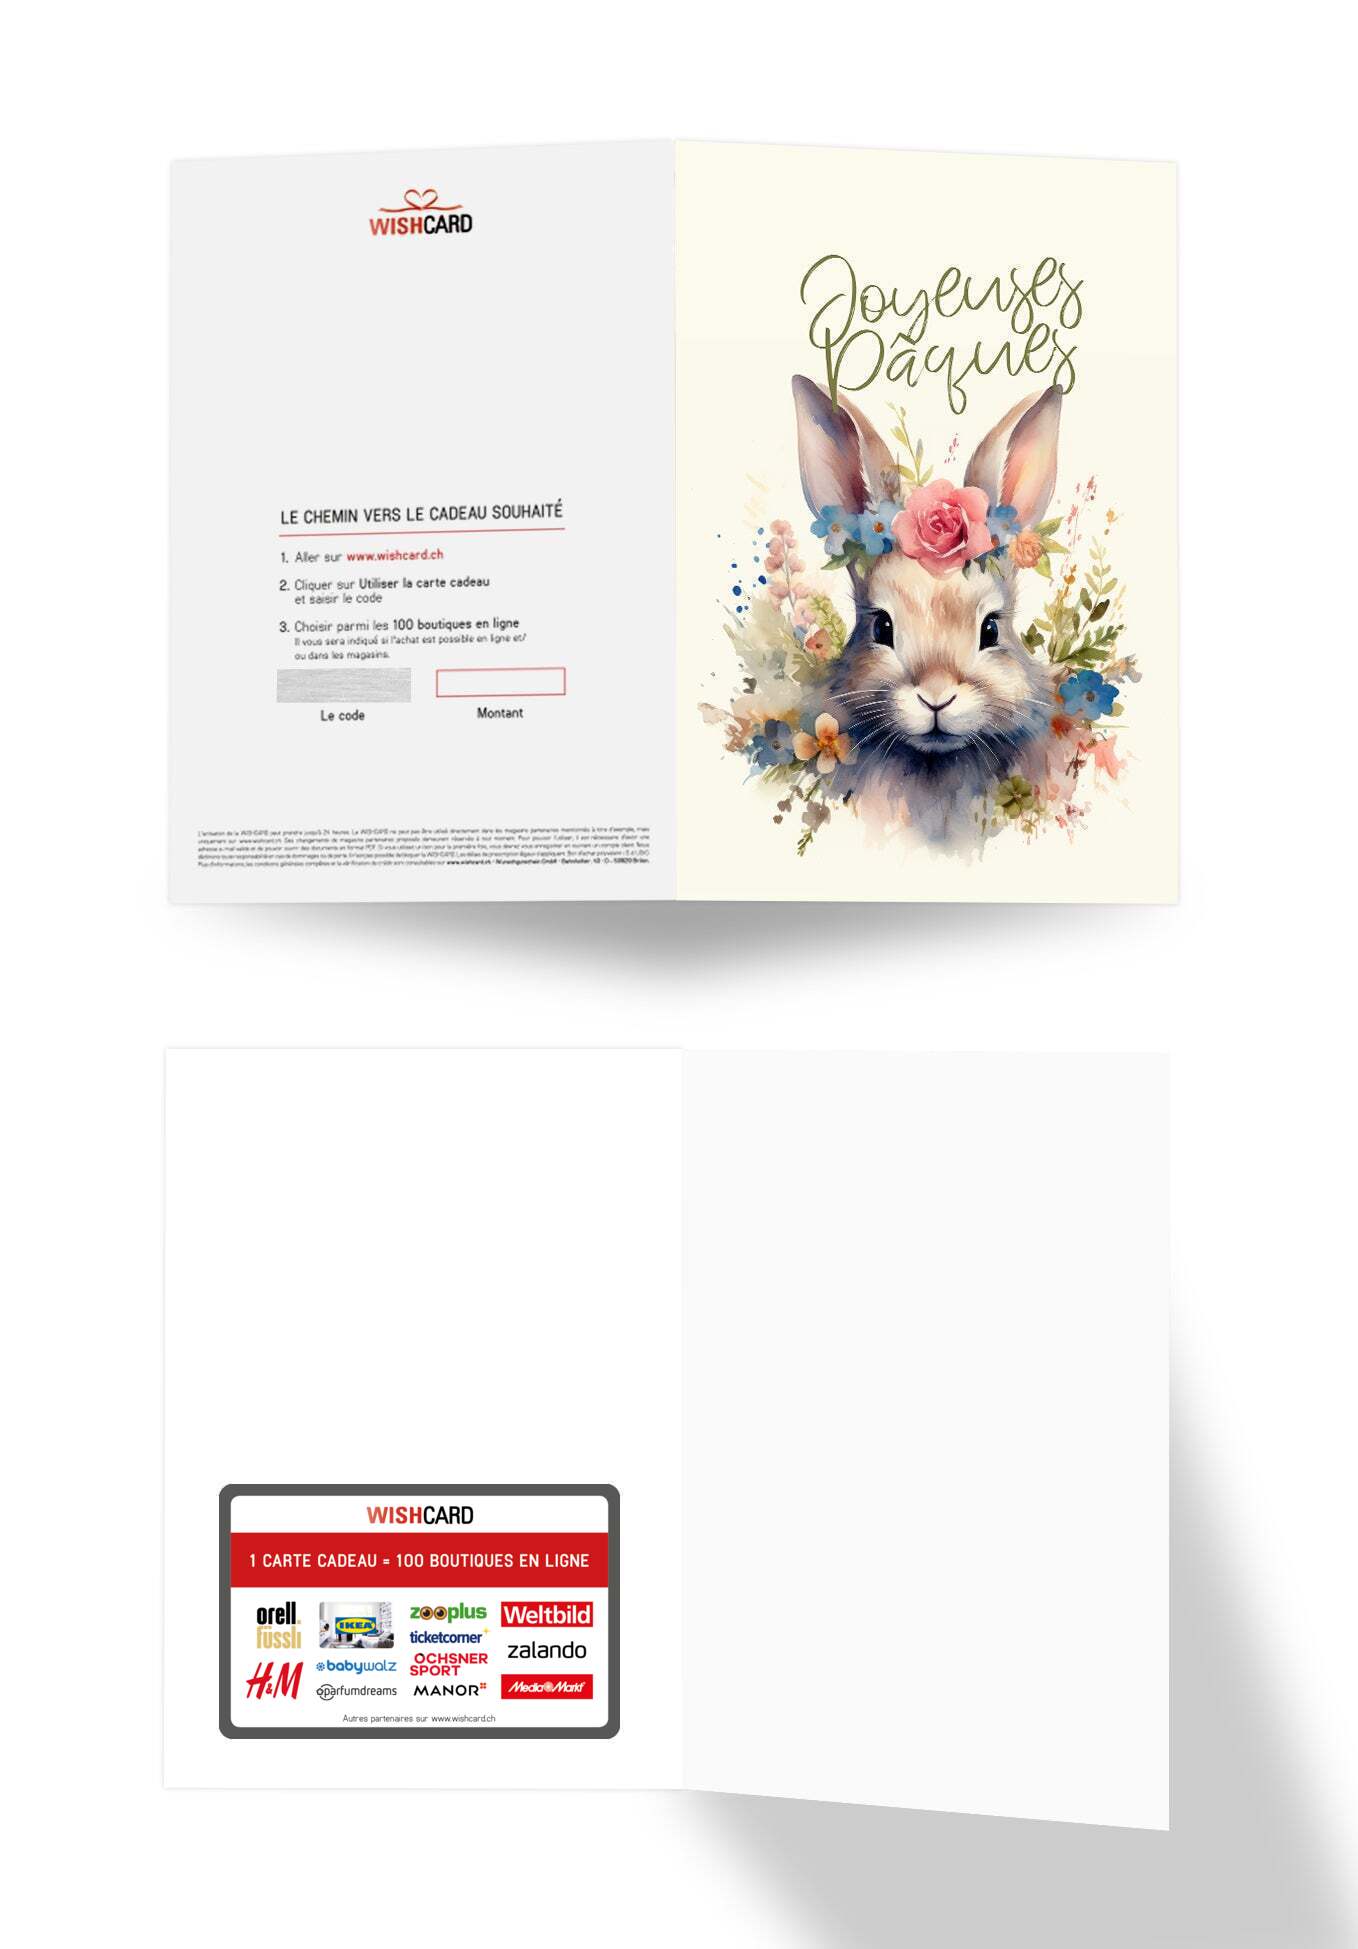 Joyeuses Pâques - Fleurs de lapin (Gutscheinwert)